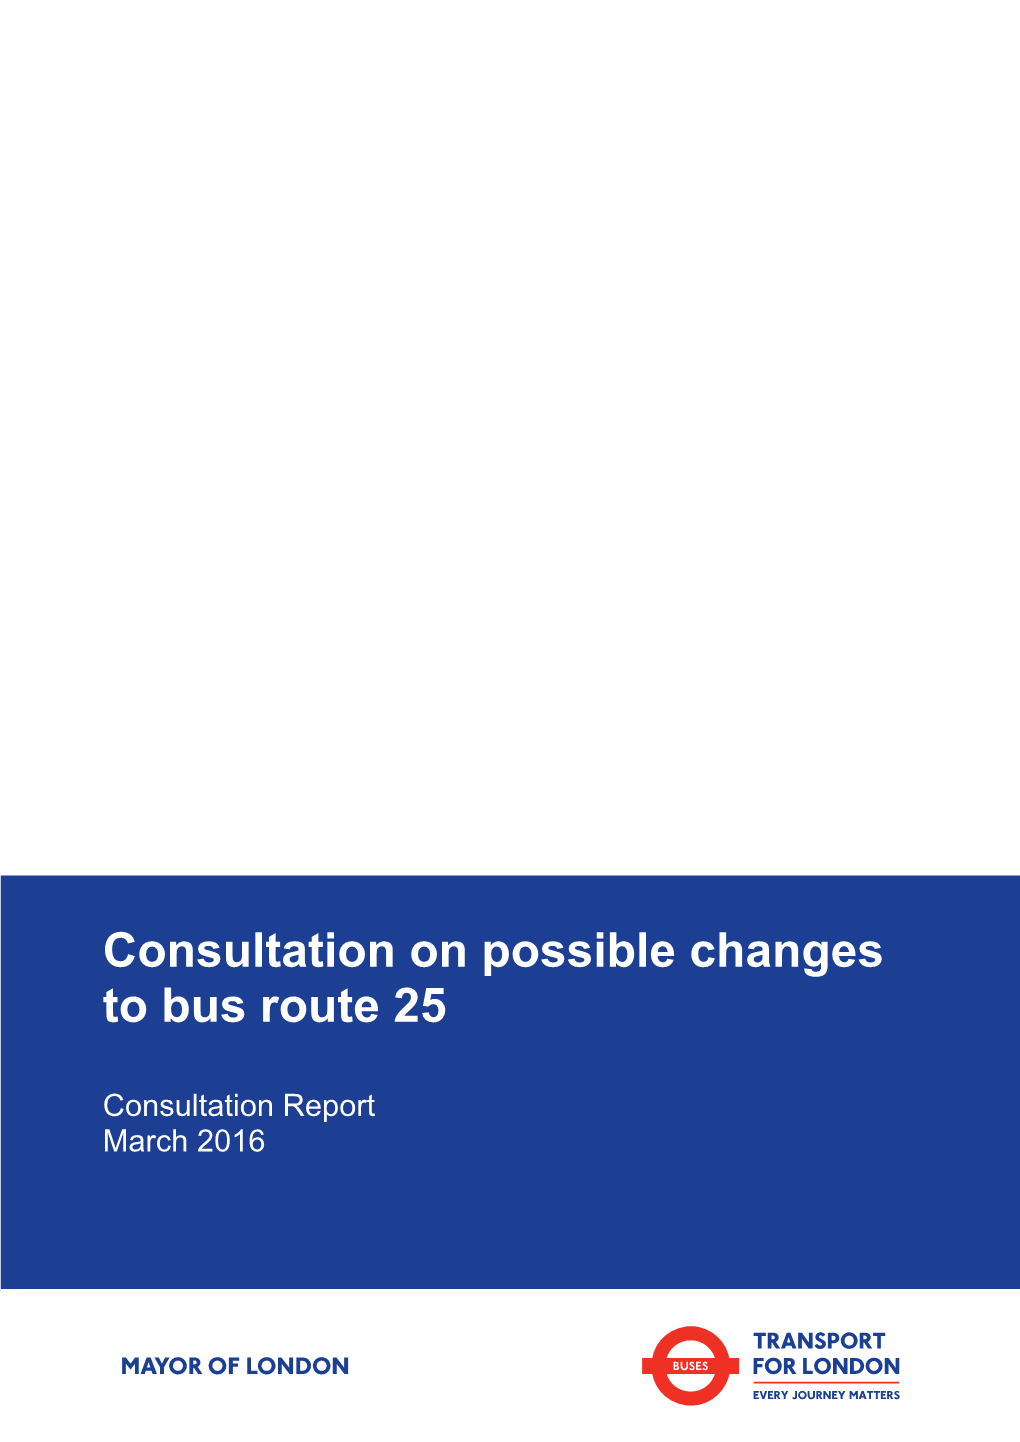 Route 25 Consultation Report